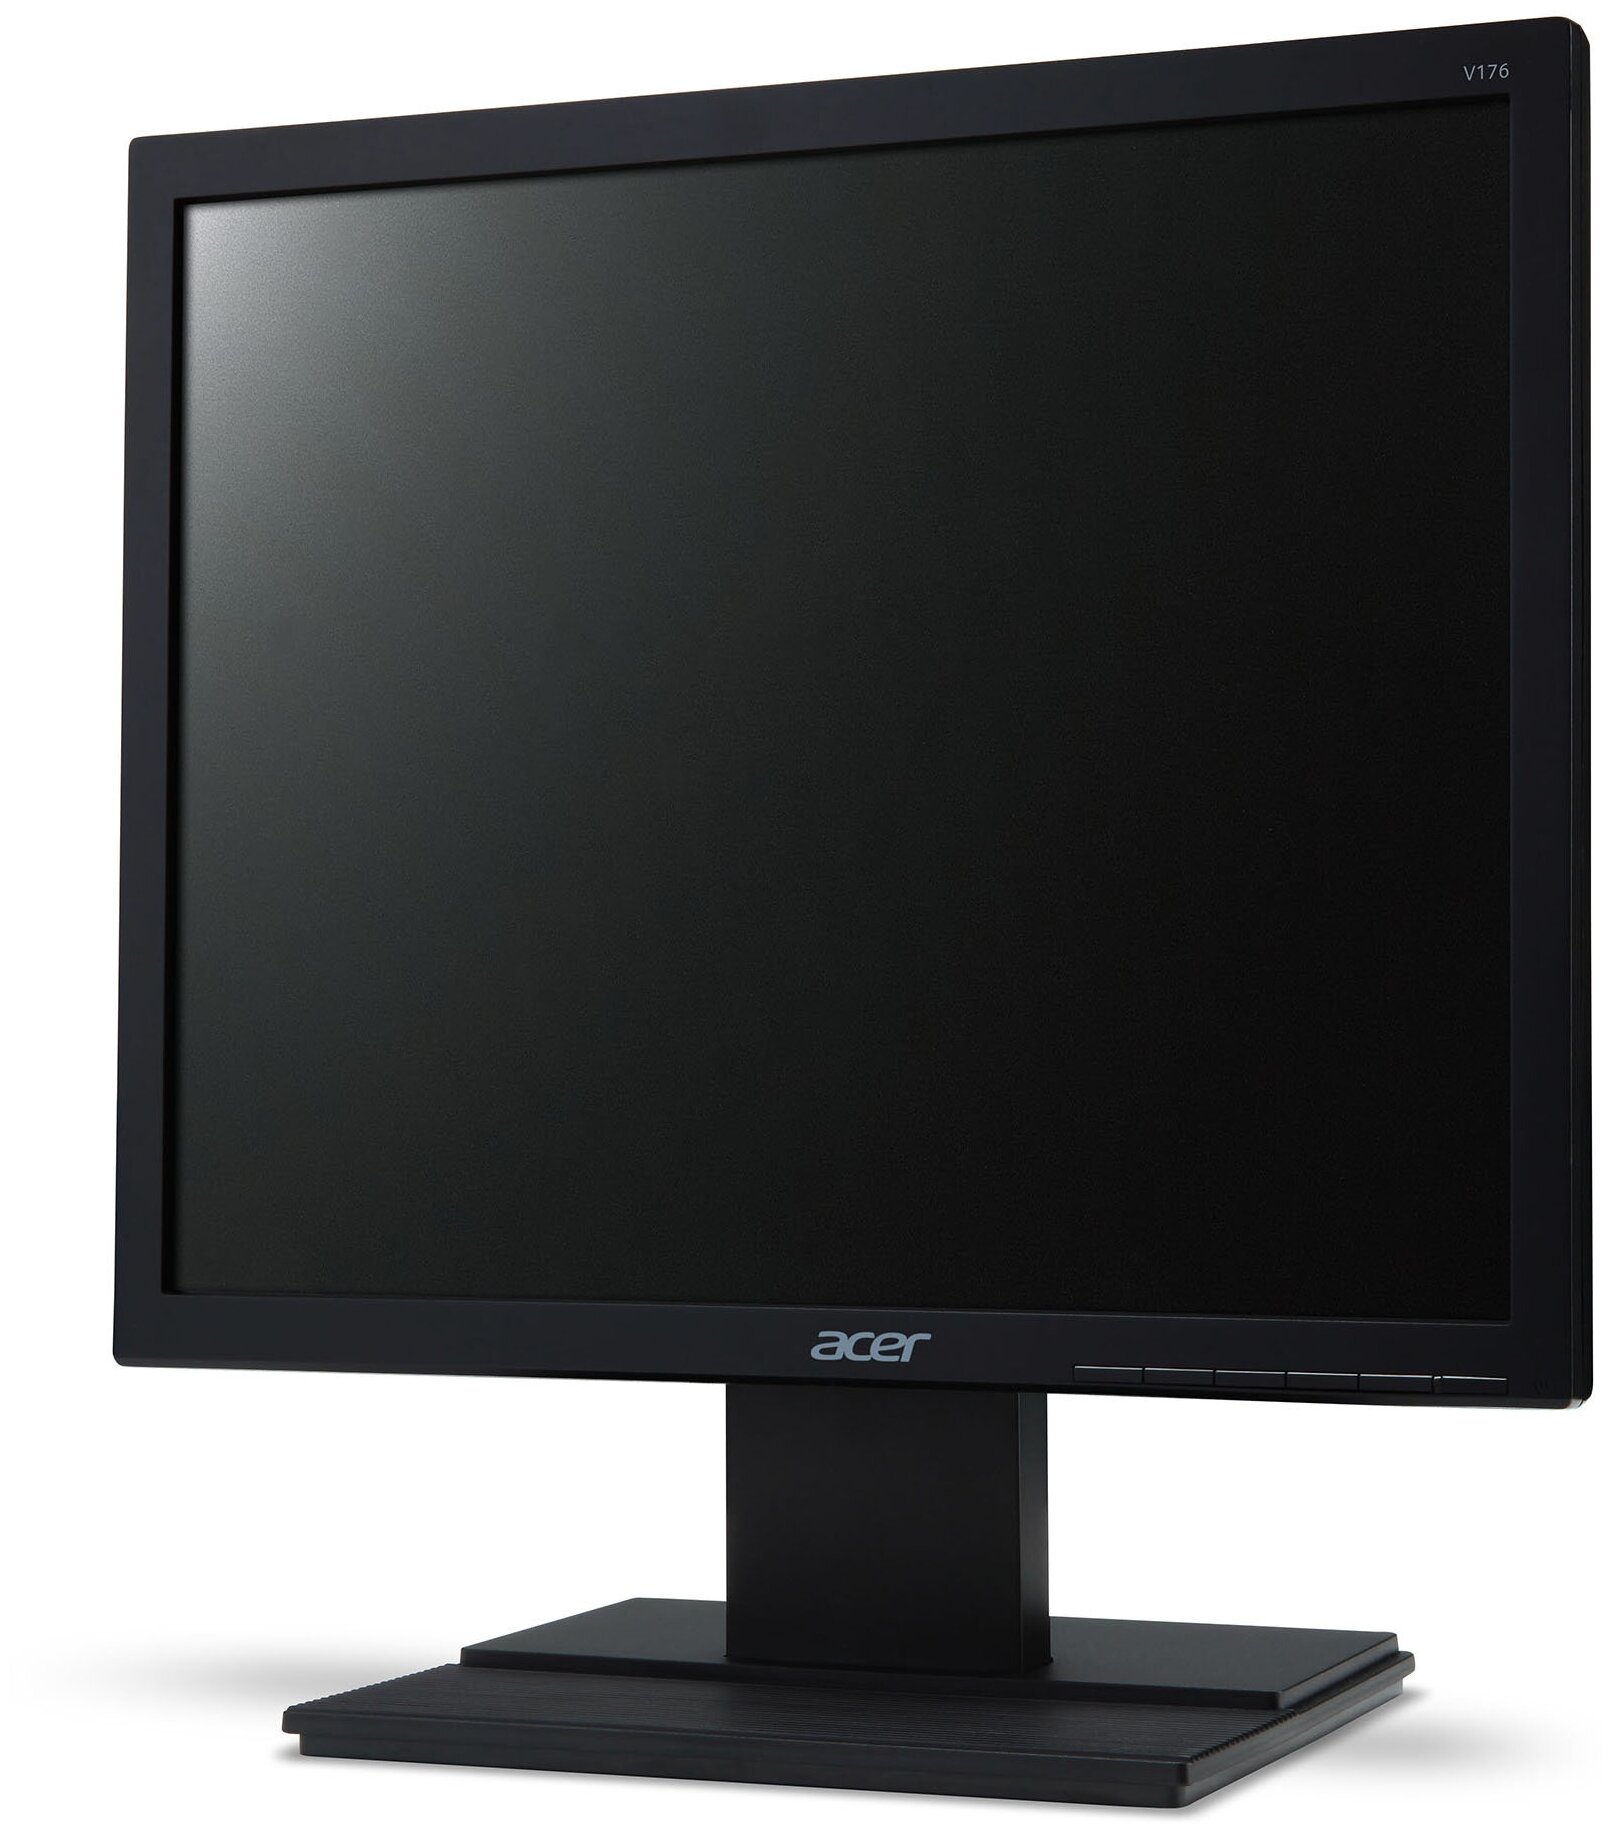 17" Монитор Acer V176Lb, 1280x1024, 60 Гц, TN, черный